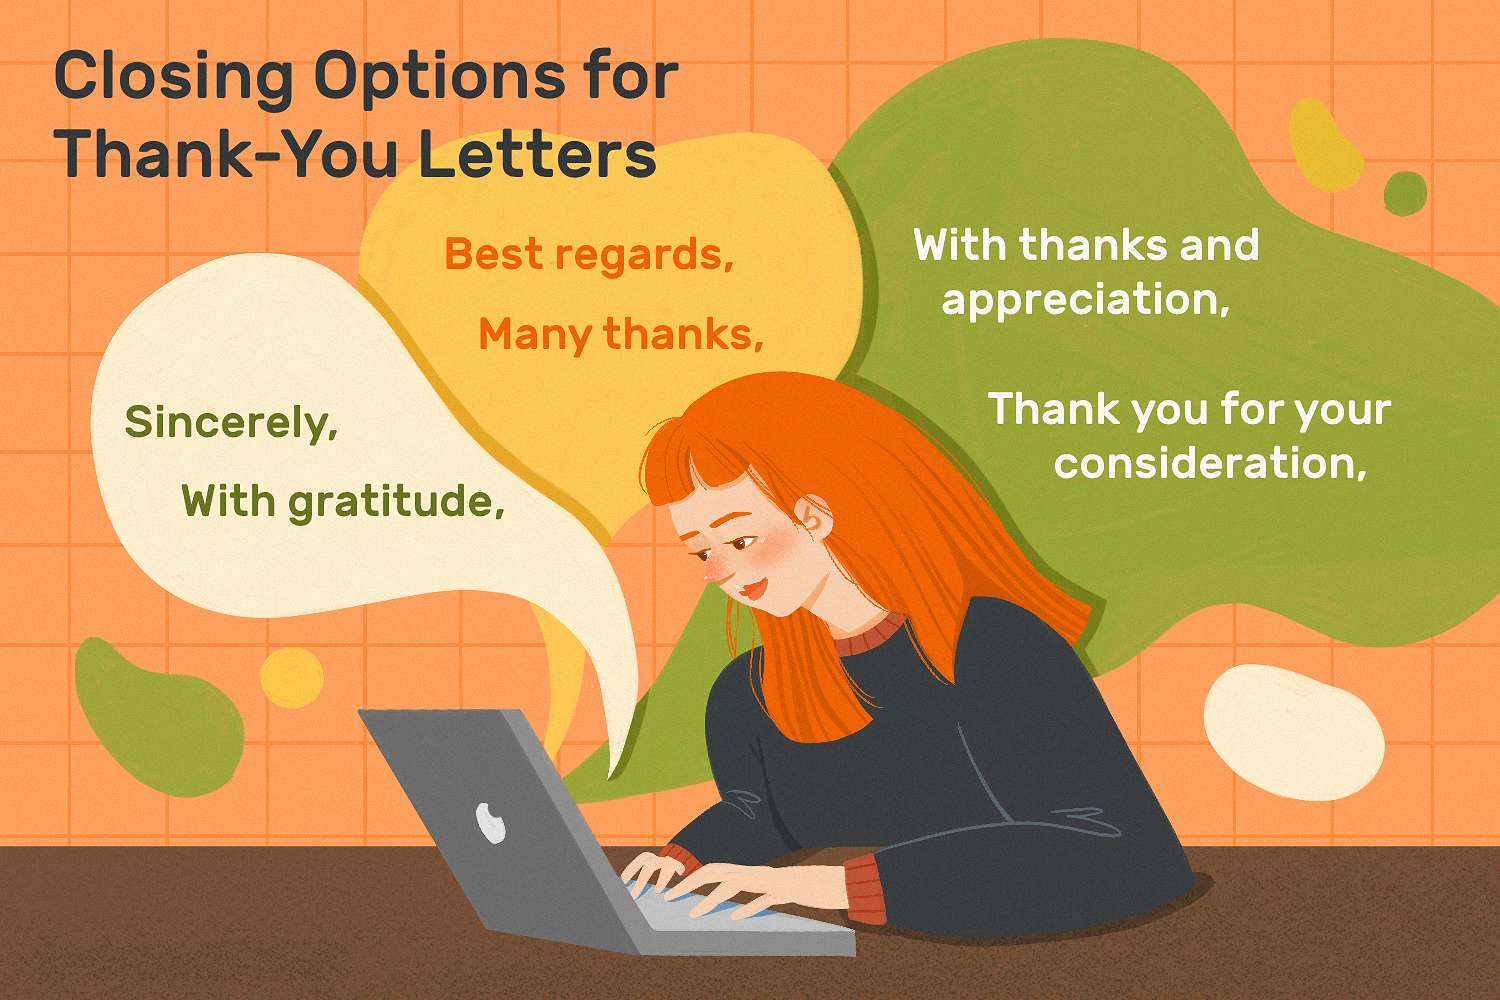 这张图提供了感谢信的结尾选项，包括“真诚的”，“感谢”，“最好的问候”，“非常感谢”，“感谢和欣赏”，以及“感谢您的考虑”。